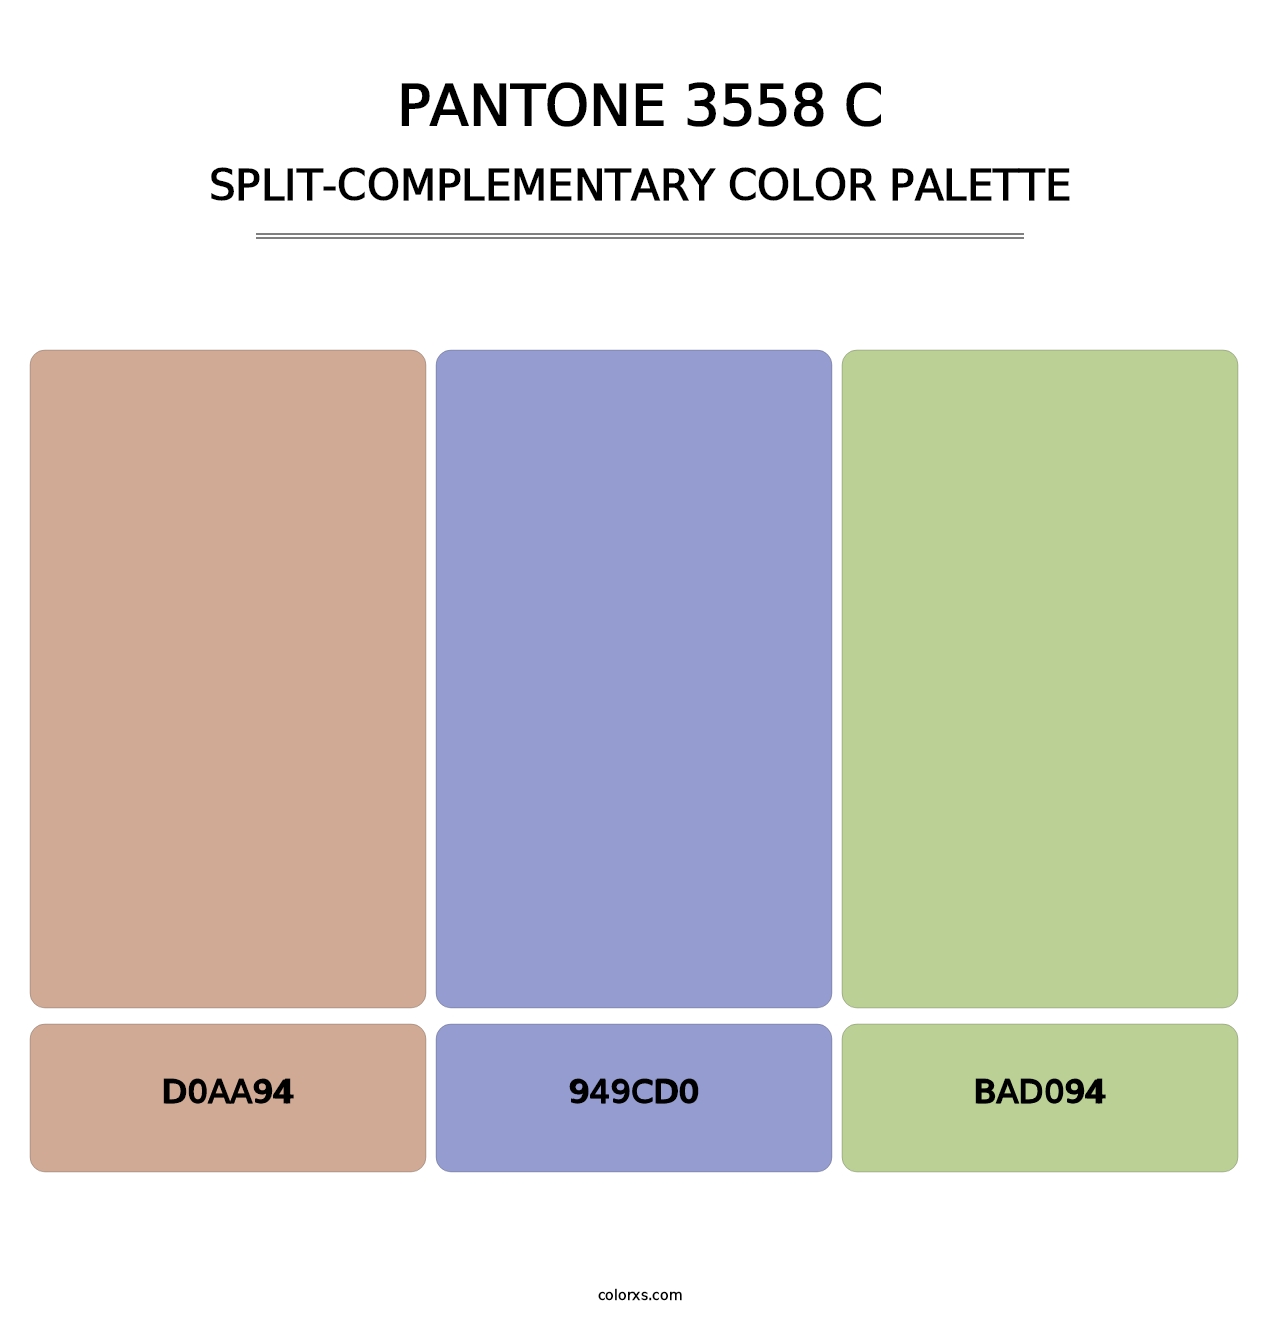 PANTONE 3558 C - Split-Complementary Color Palette